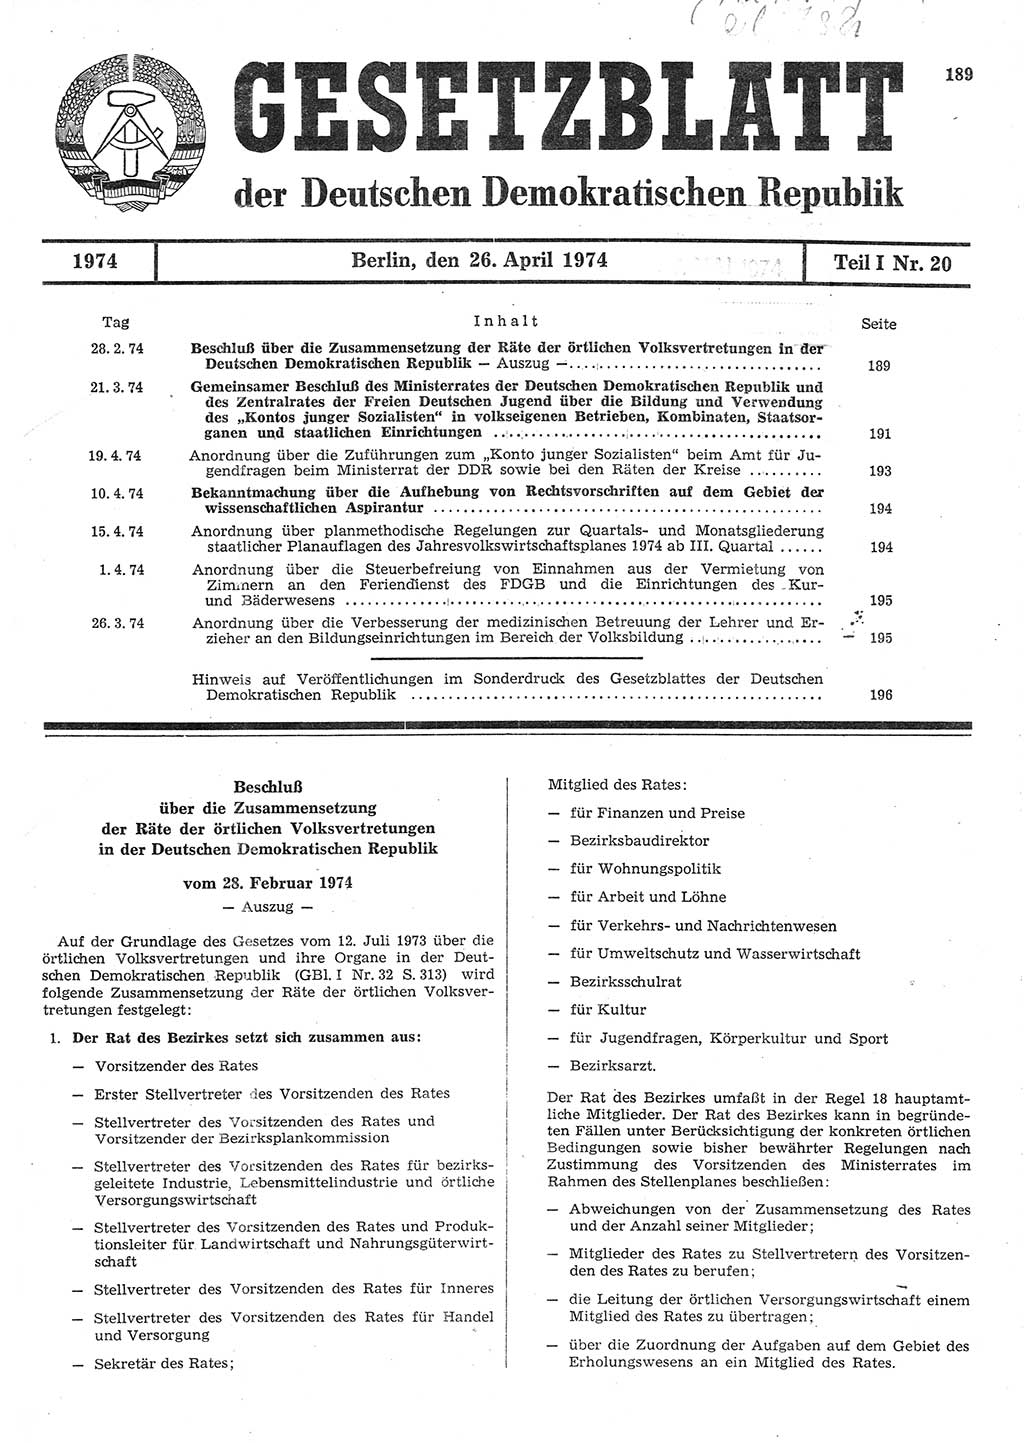 Gesetzblatt (GBl.) der Deutschen Demokratischen Republik (DDR) Teil Ⅰ 1974, Seite 189 (GBl. DDR Ⅰ 1974, S. 189)